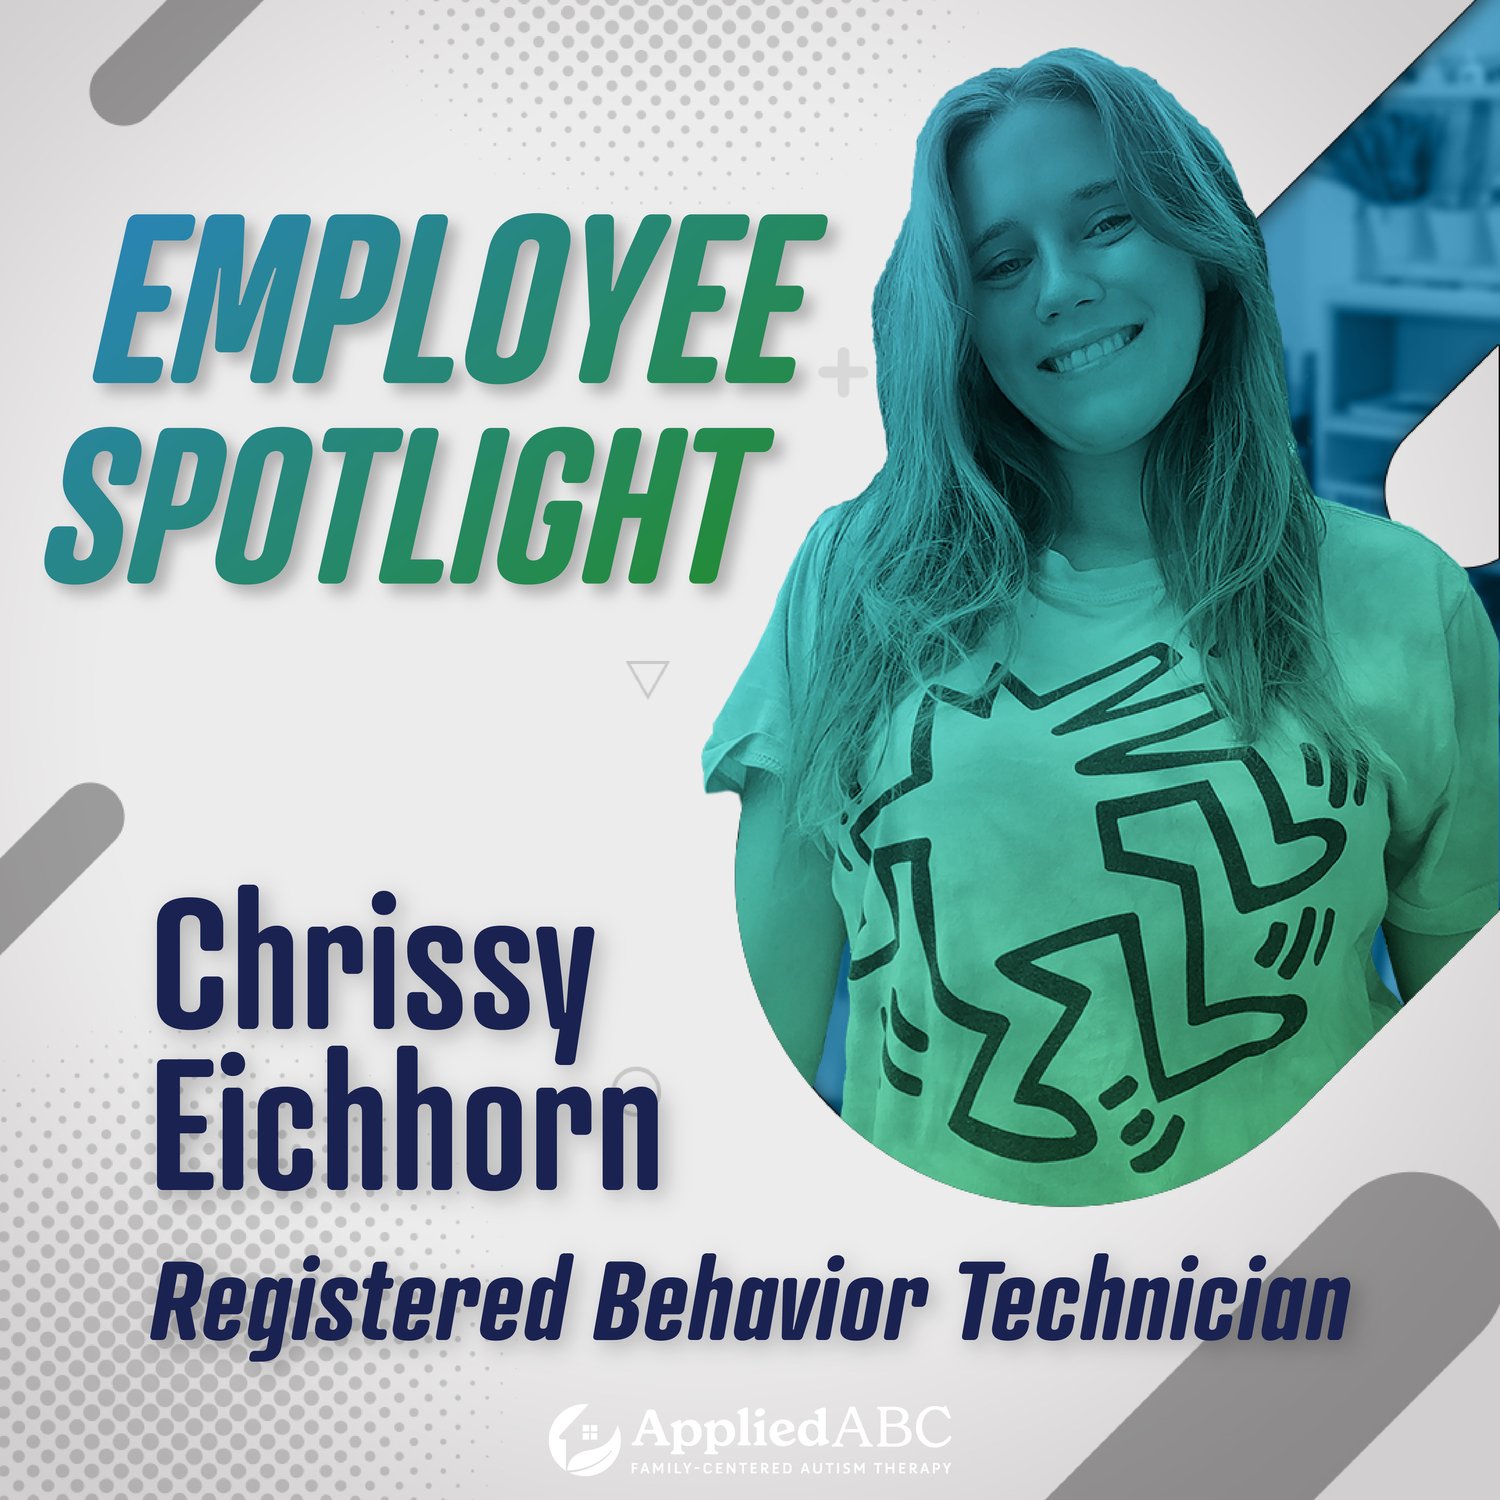 chrissy-eichhorn-registered-behavior-technician